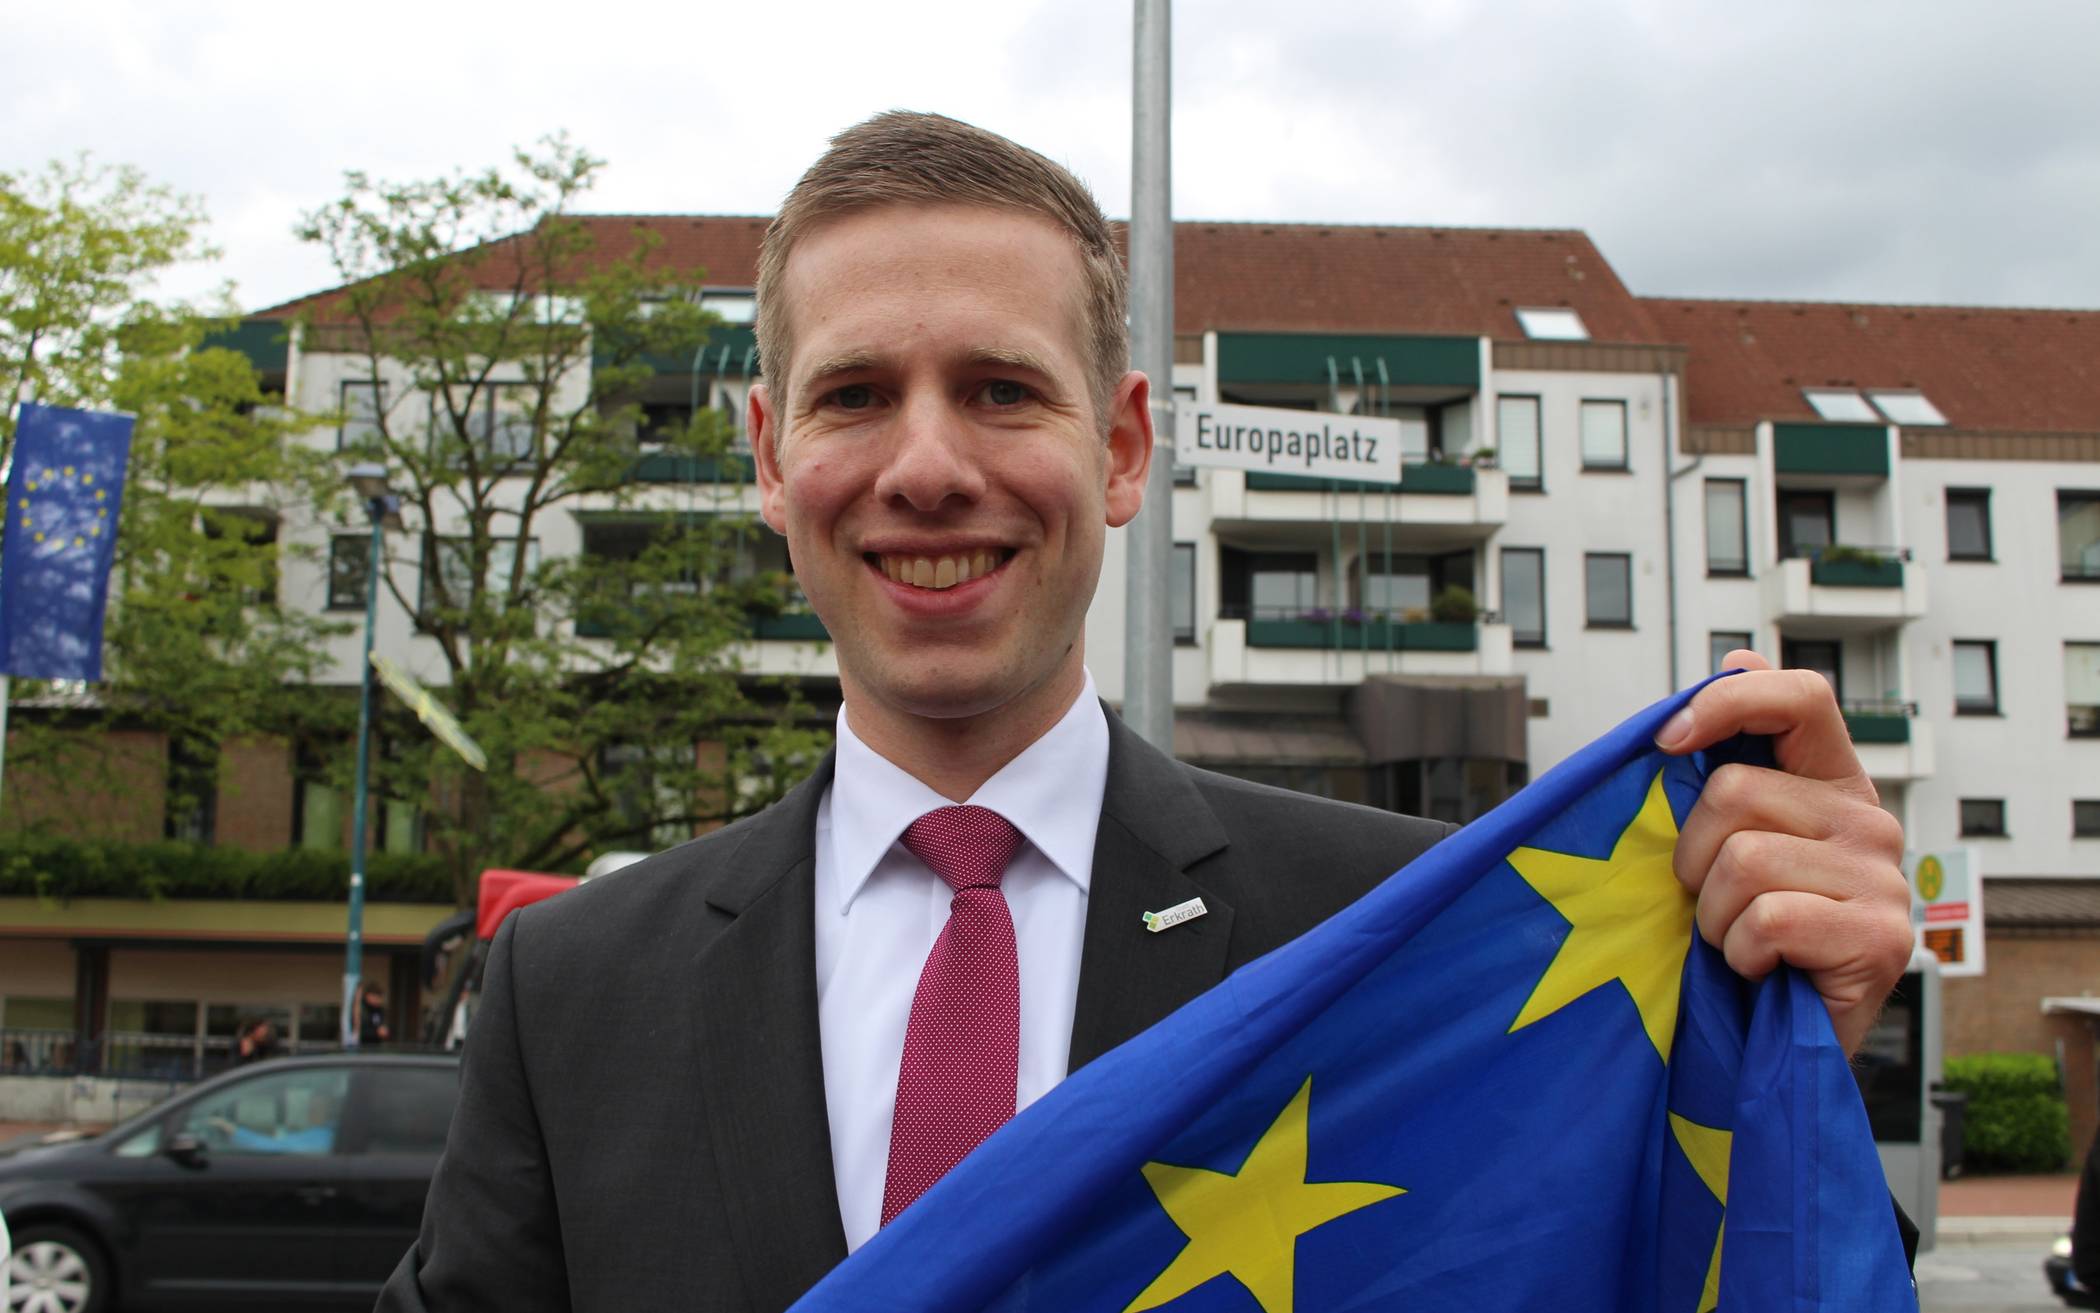  Bürgermeister Christoph Schultz freut sich über das Zeichen für Europa und das mitten in Hochdahl. 